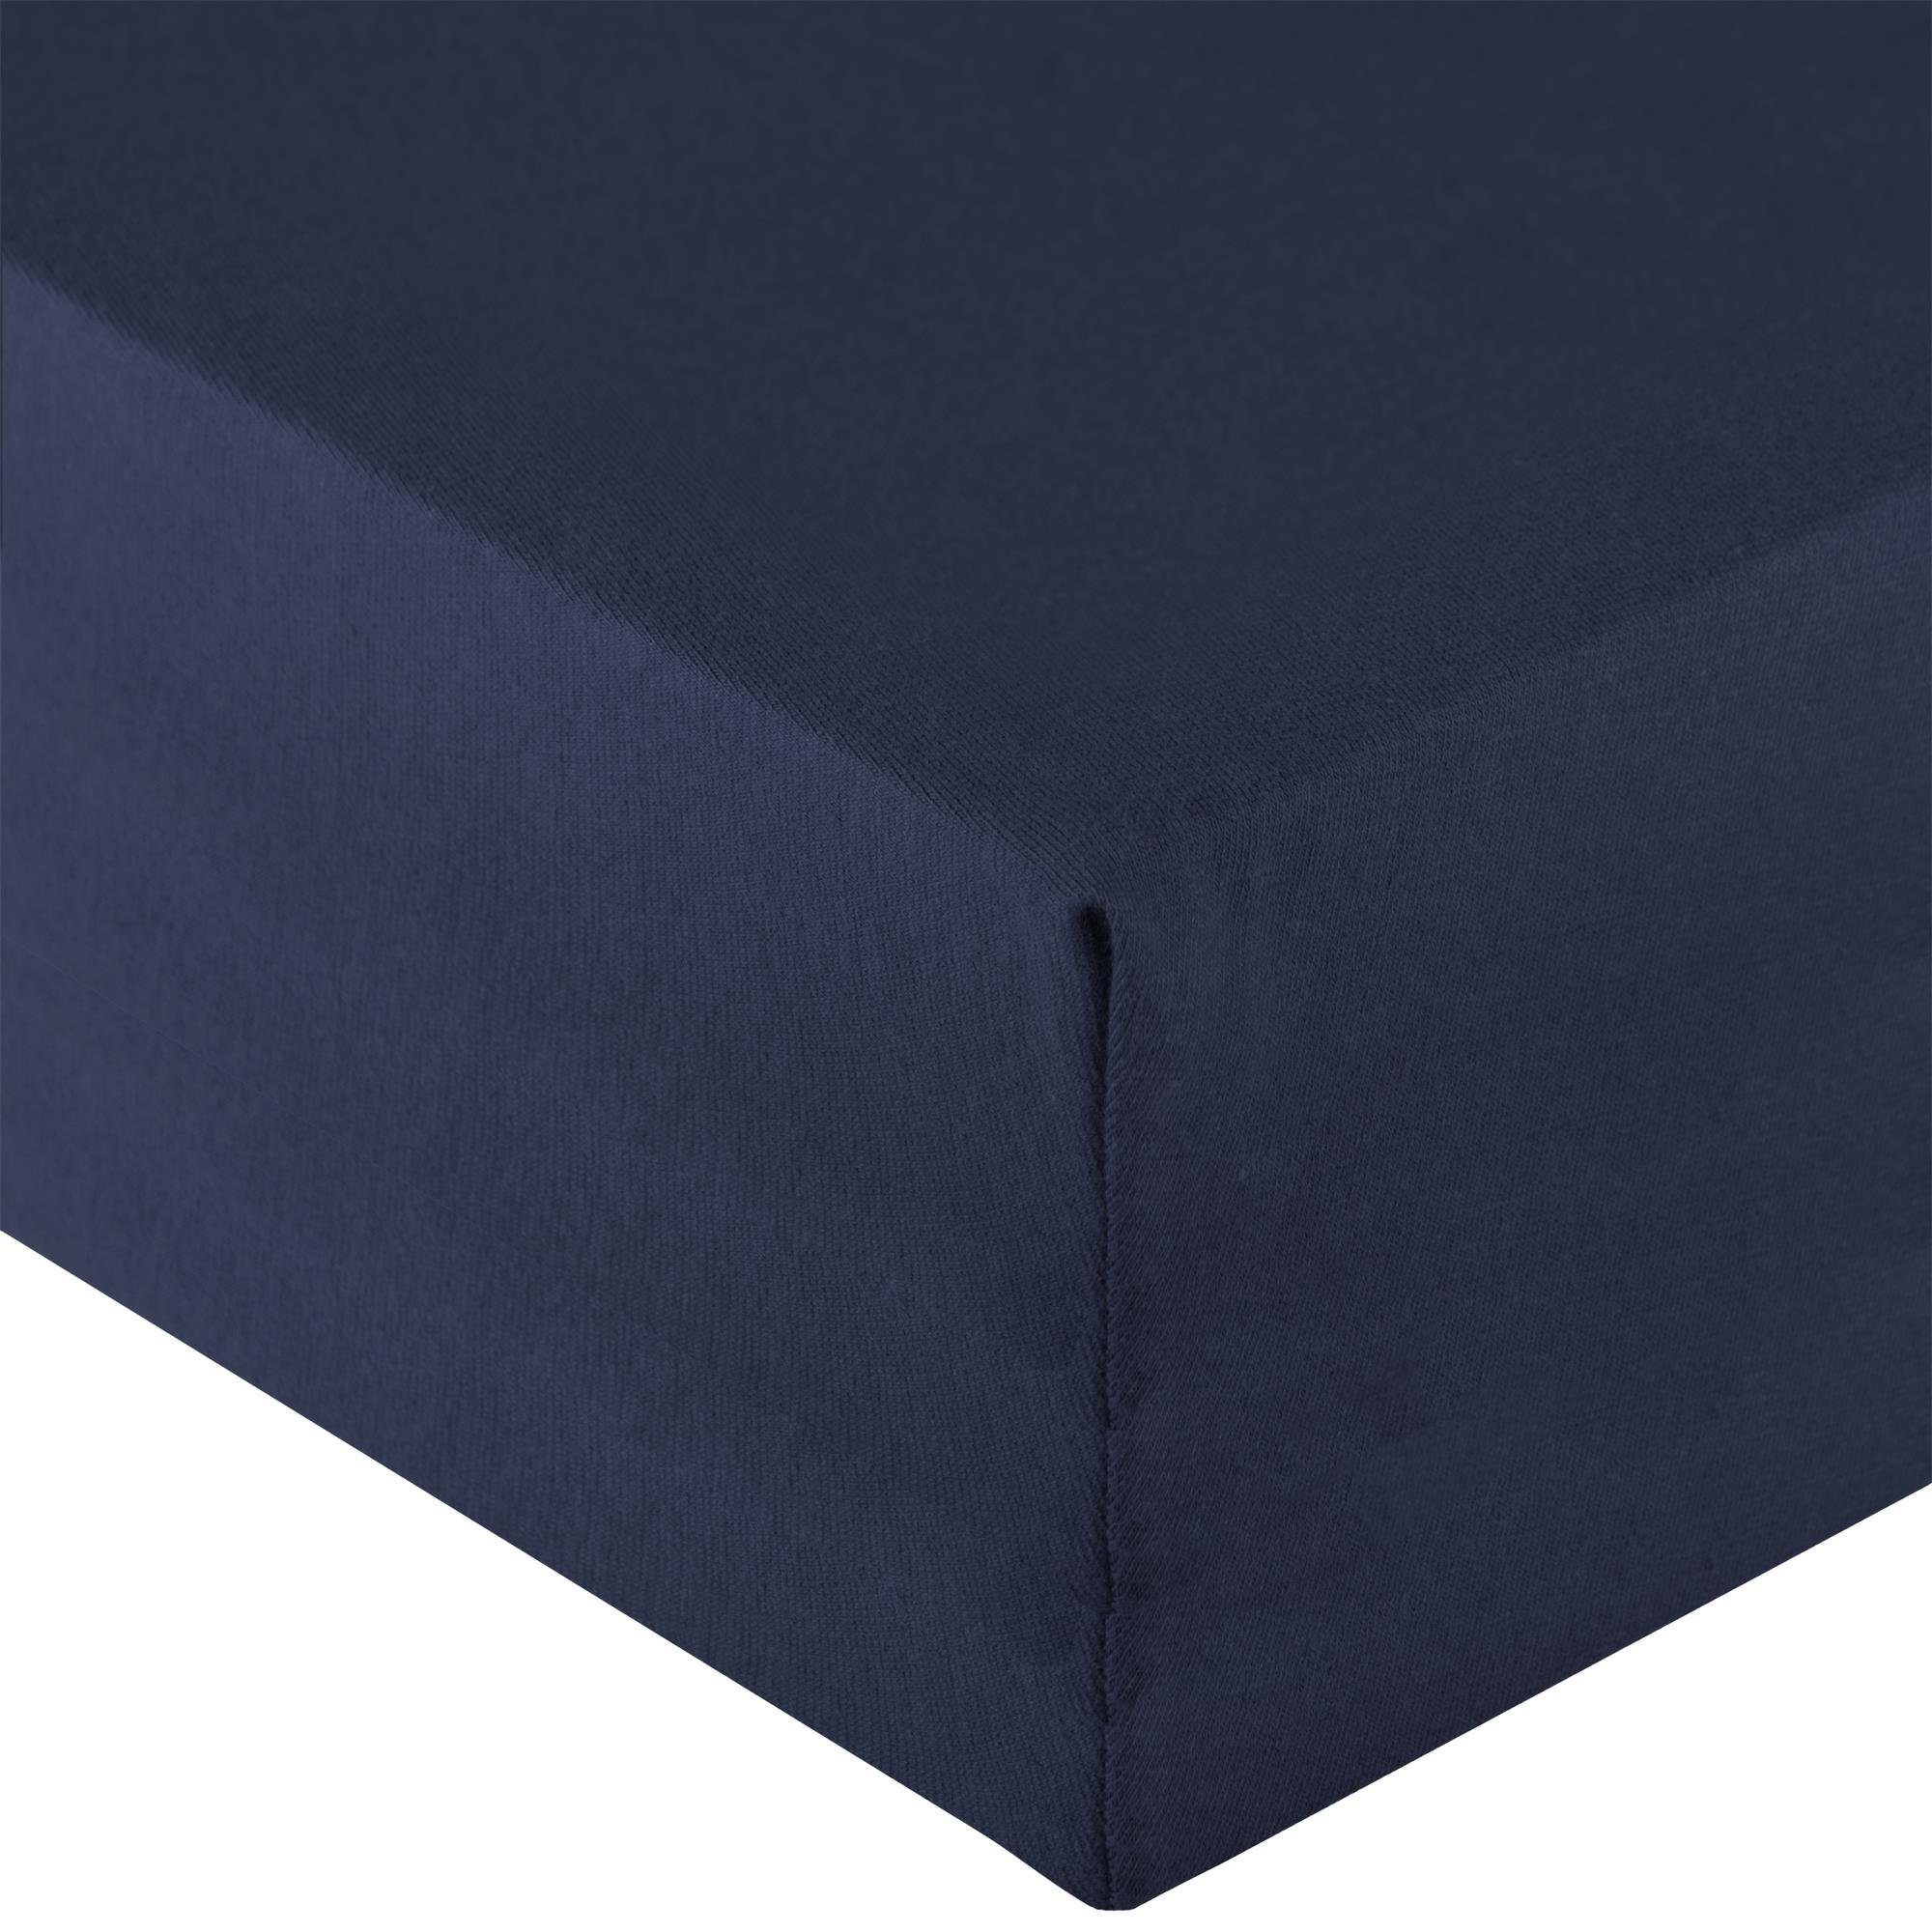 Spannbettlaken Royal Spannbetttuch Elastan XL 200x220-220x240cm dunkelblau, aqua-textil, Baumwolle, (1 Stück), bügelfrei,dauerelastisch und weich,extrem feine Fasern